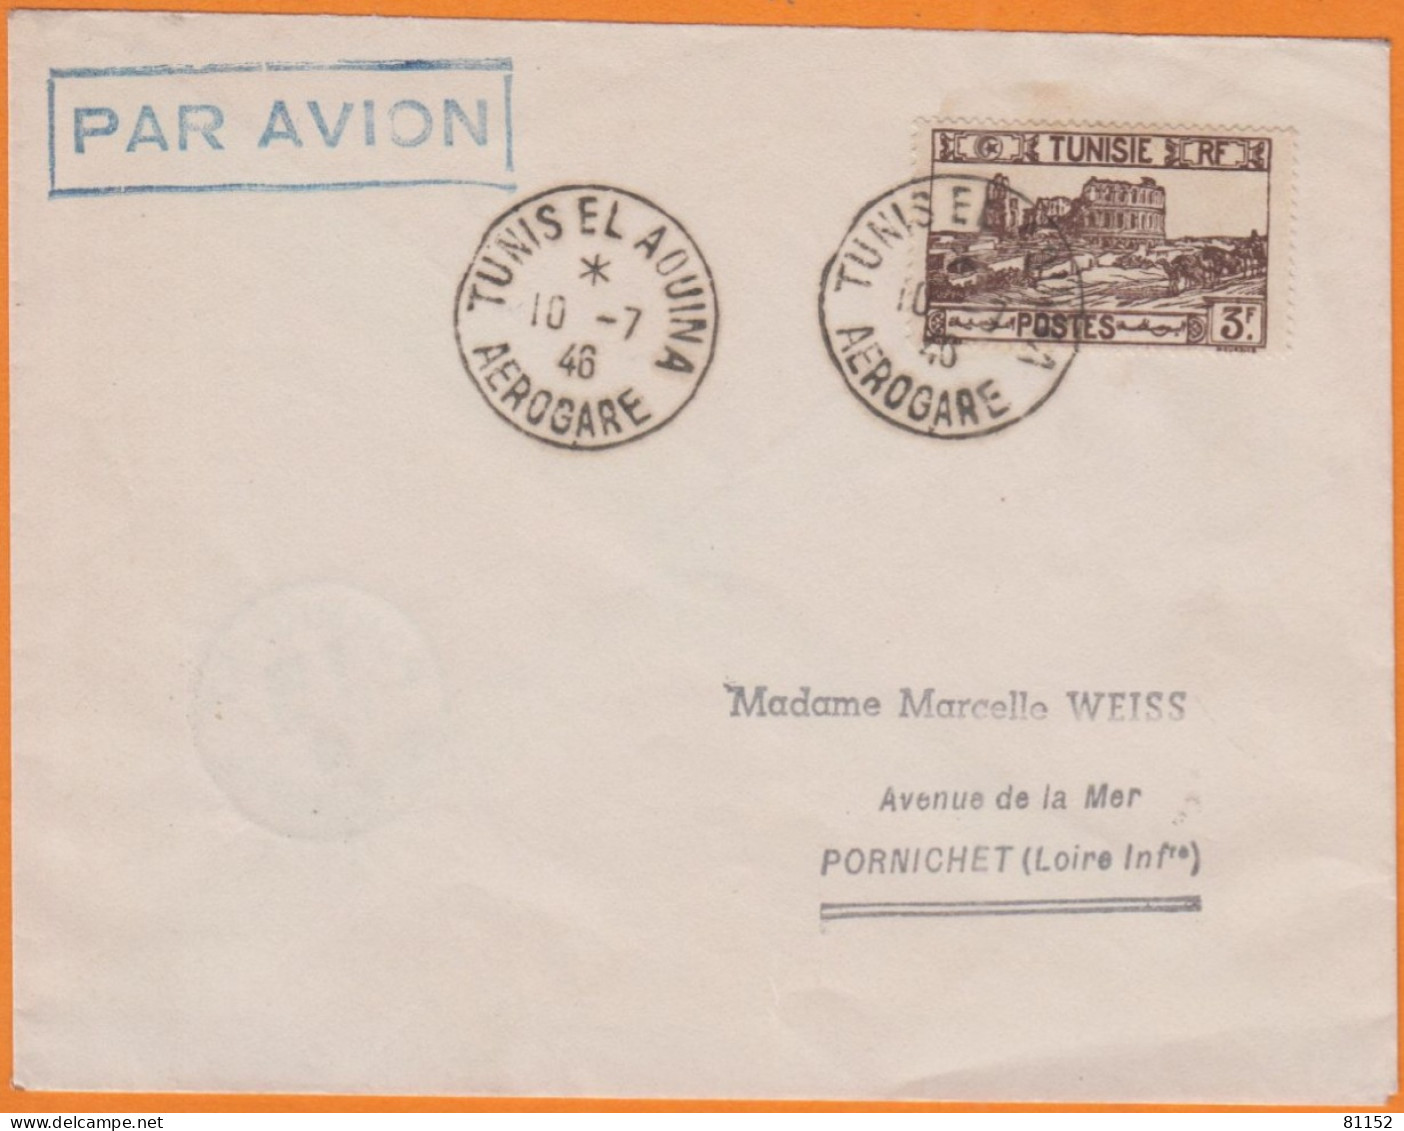 Lettre PAR AVION De TUNIS EL AOUINA  AEROGARE   Le 10 7 1947   Pour  44 PORNICHET  Affranchie à 3F - Poste Aérienne